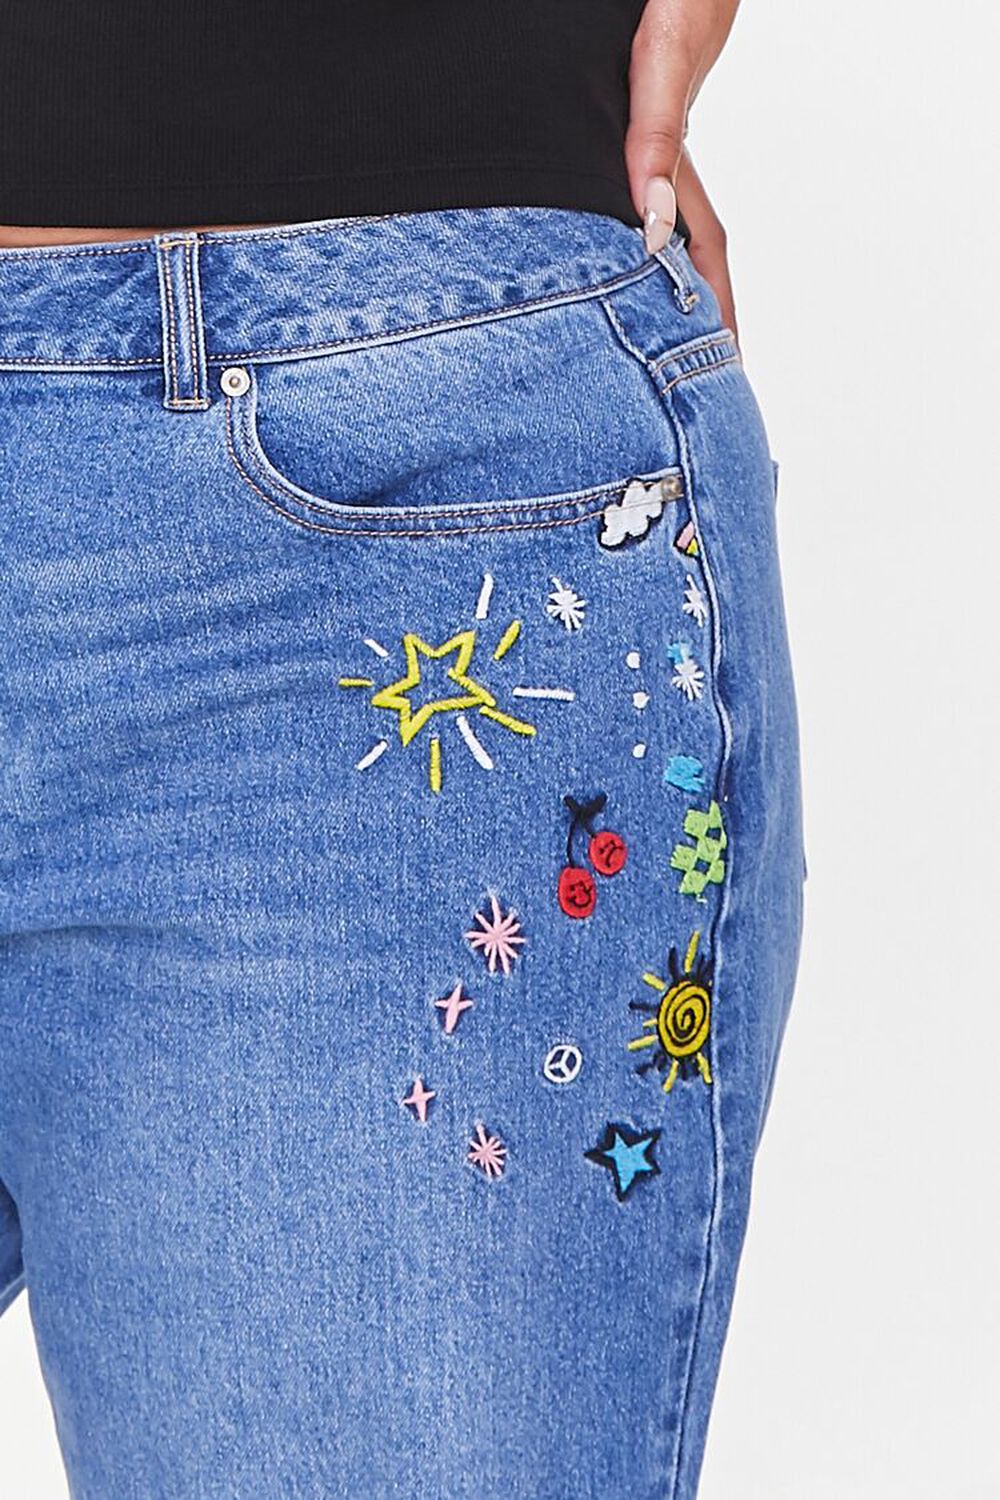 terrorisme Arbitrage Let at forstå Plus Size Embroidered Star Jeans